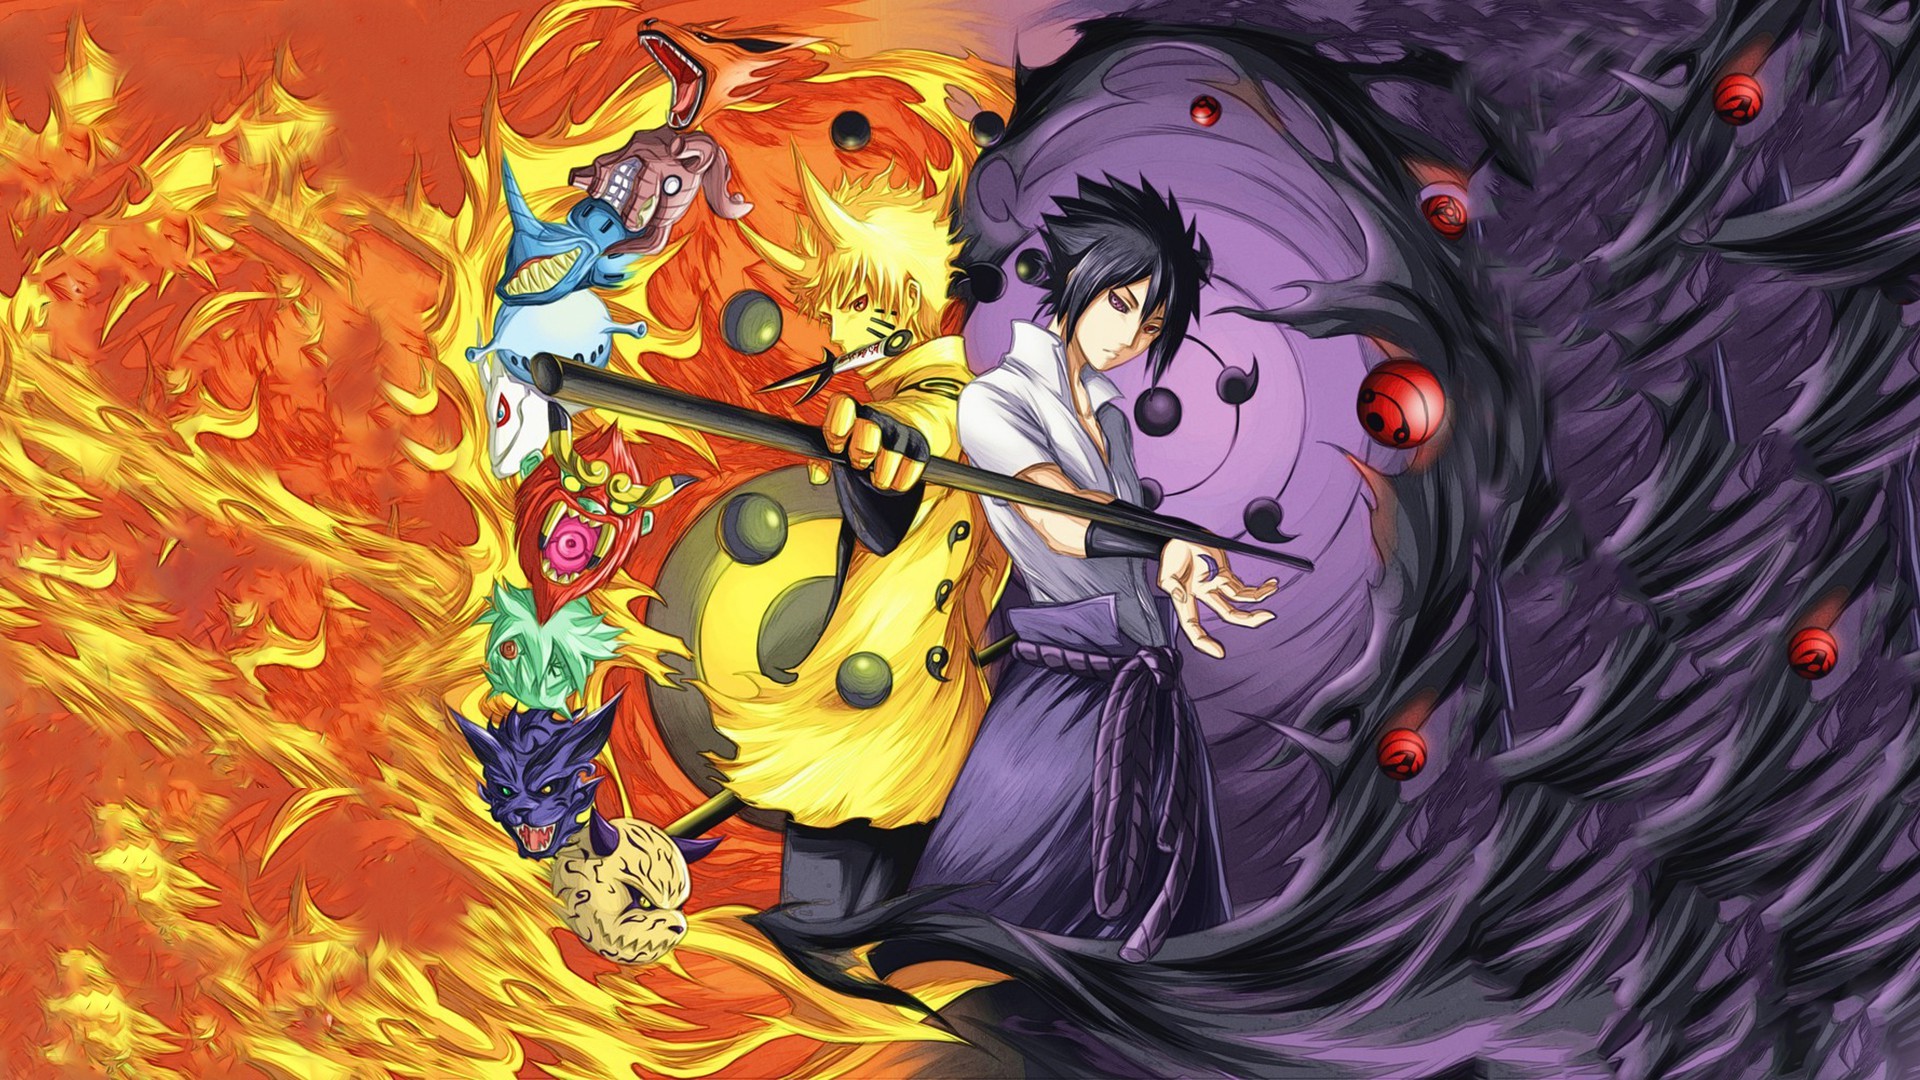 Uchiha Sasuke là một trong những nhân vật được yêu thích nhất trong series Naruto. Hãy xem hình ảnh về anh ta để khám phá sự phát triển và tình huống phức tạp của anh ta trong cuộc phiêu lưu.